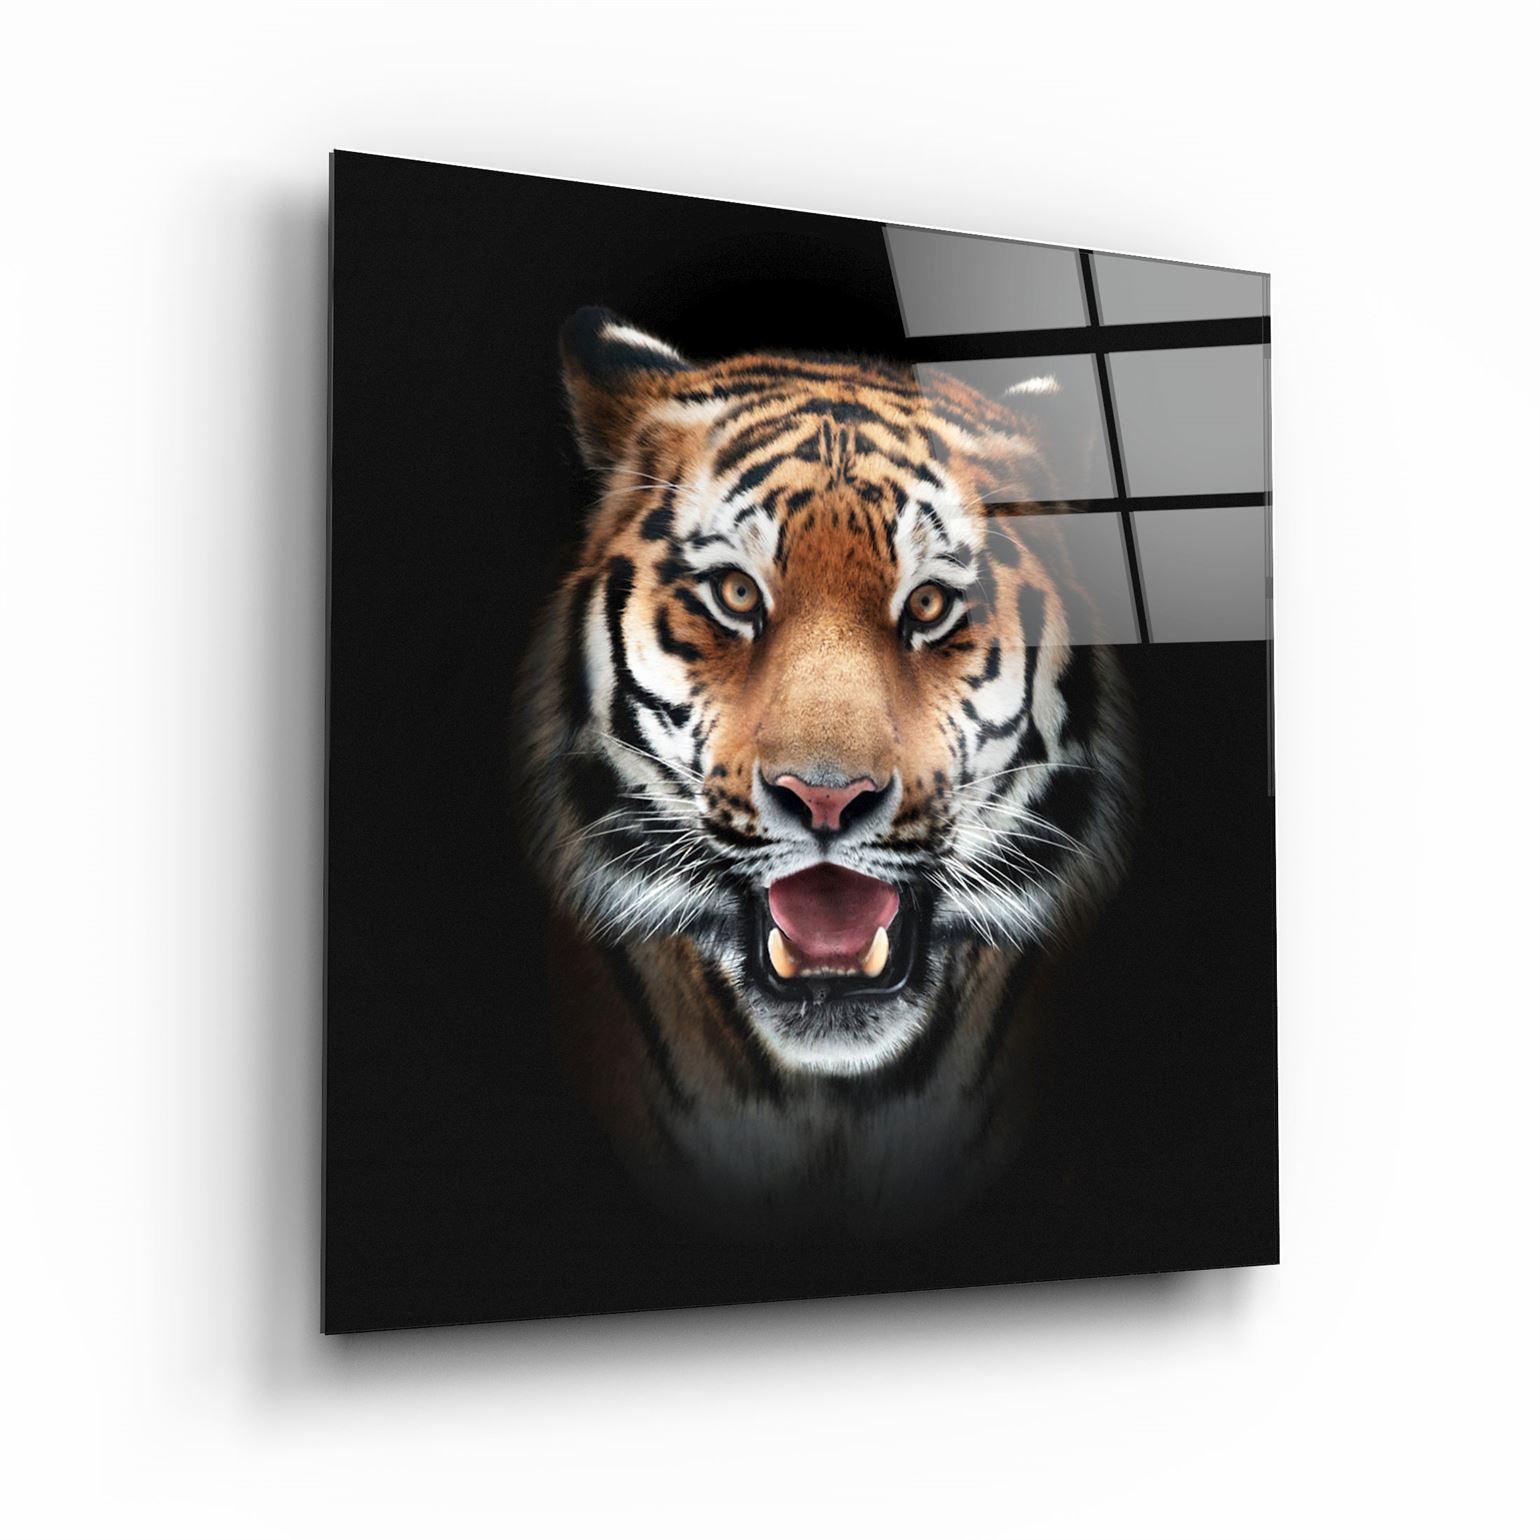 ・"Tiger"・Glass Wall Art